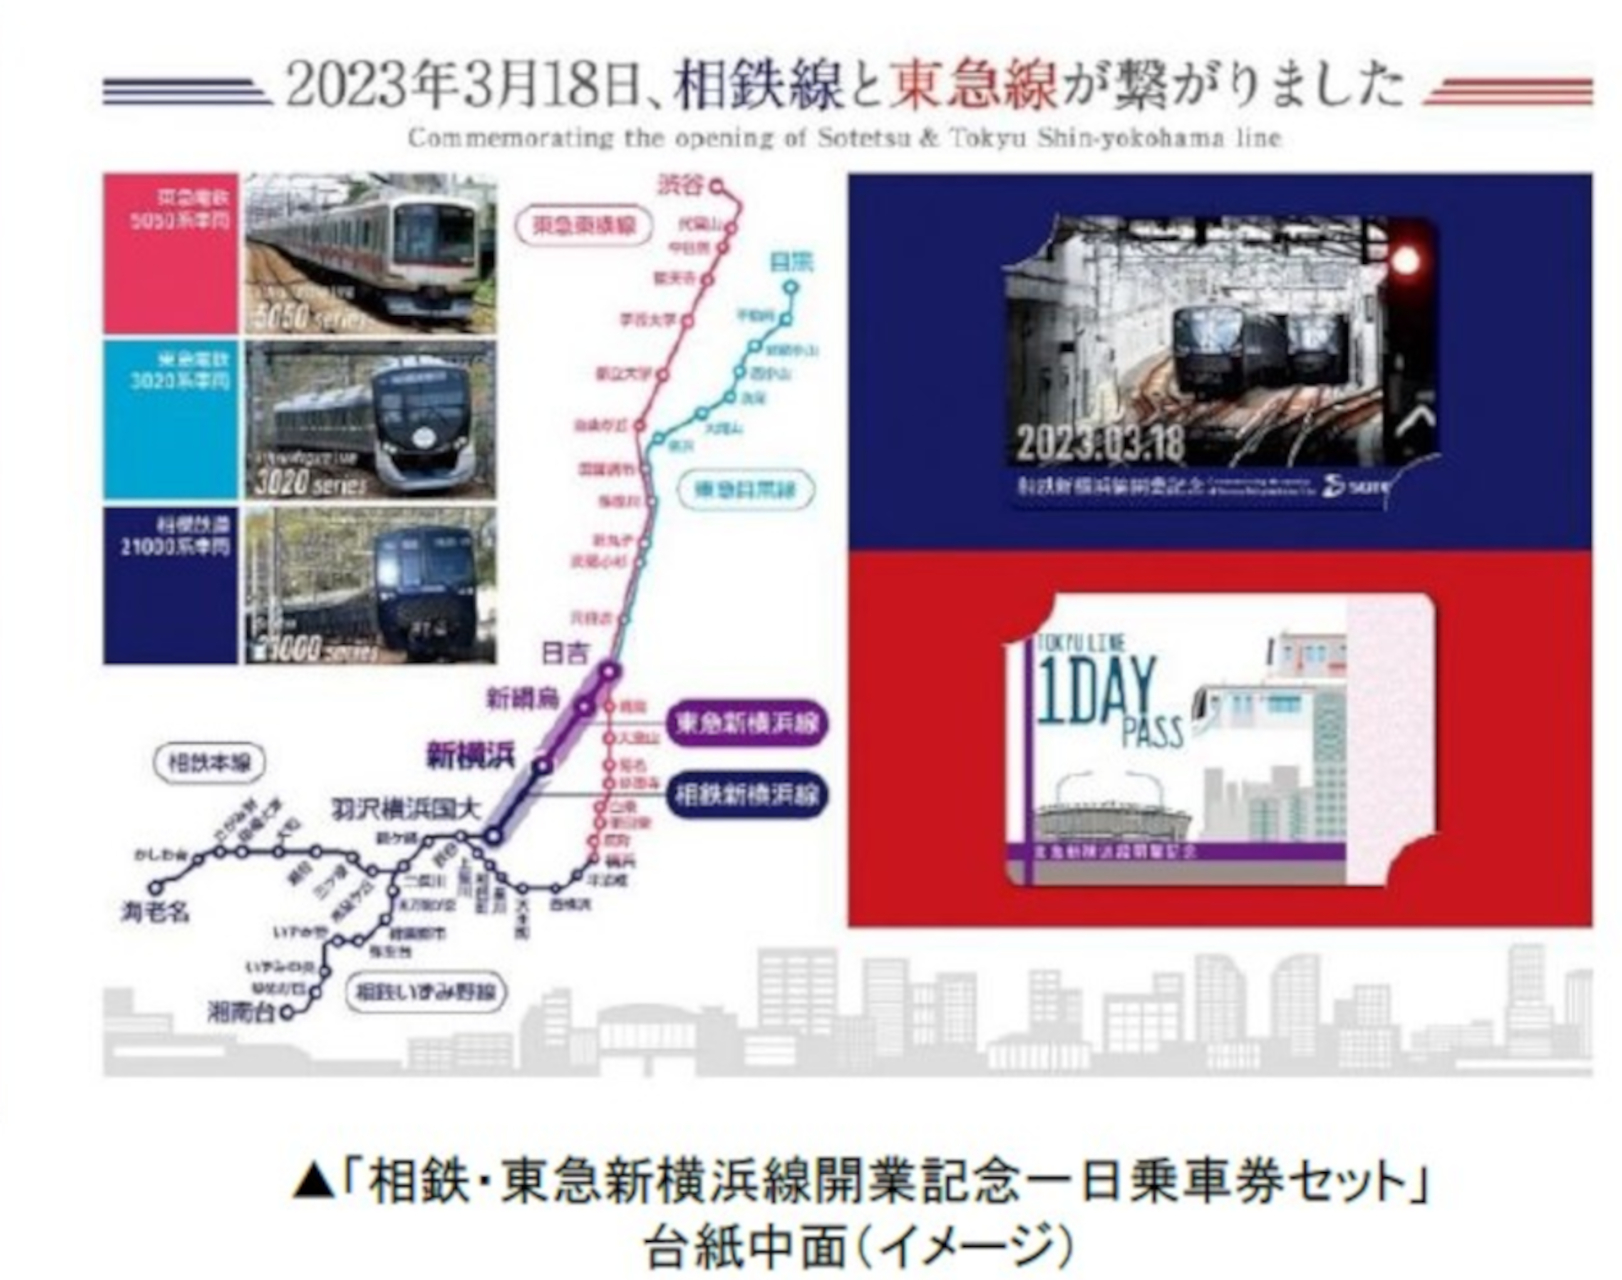 相鉄・東急新横浜線、開業記念の硬券入場券と一日乗車券。3月18日当日